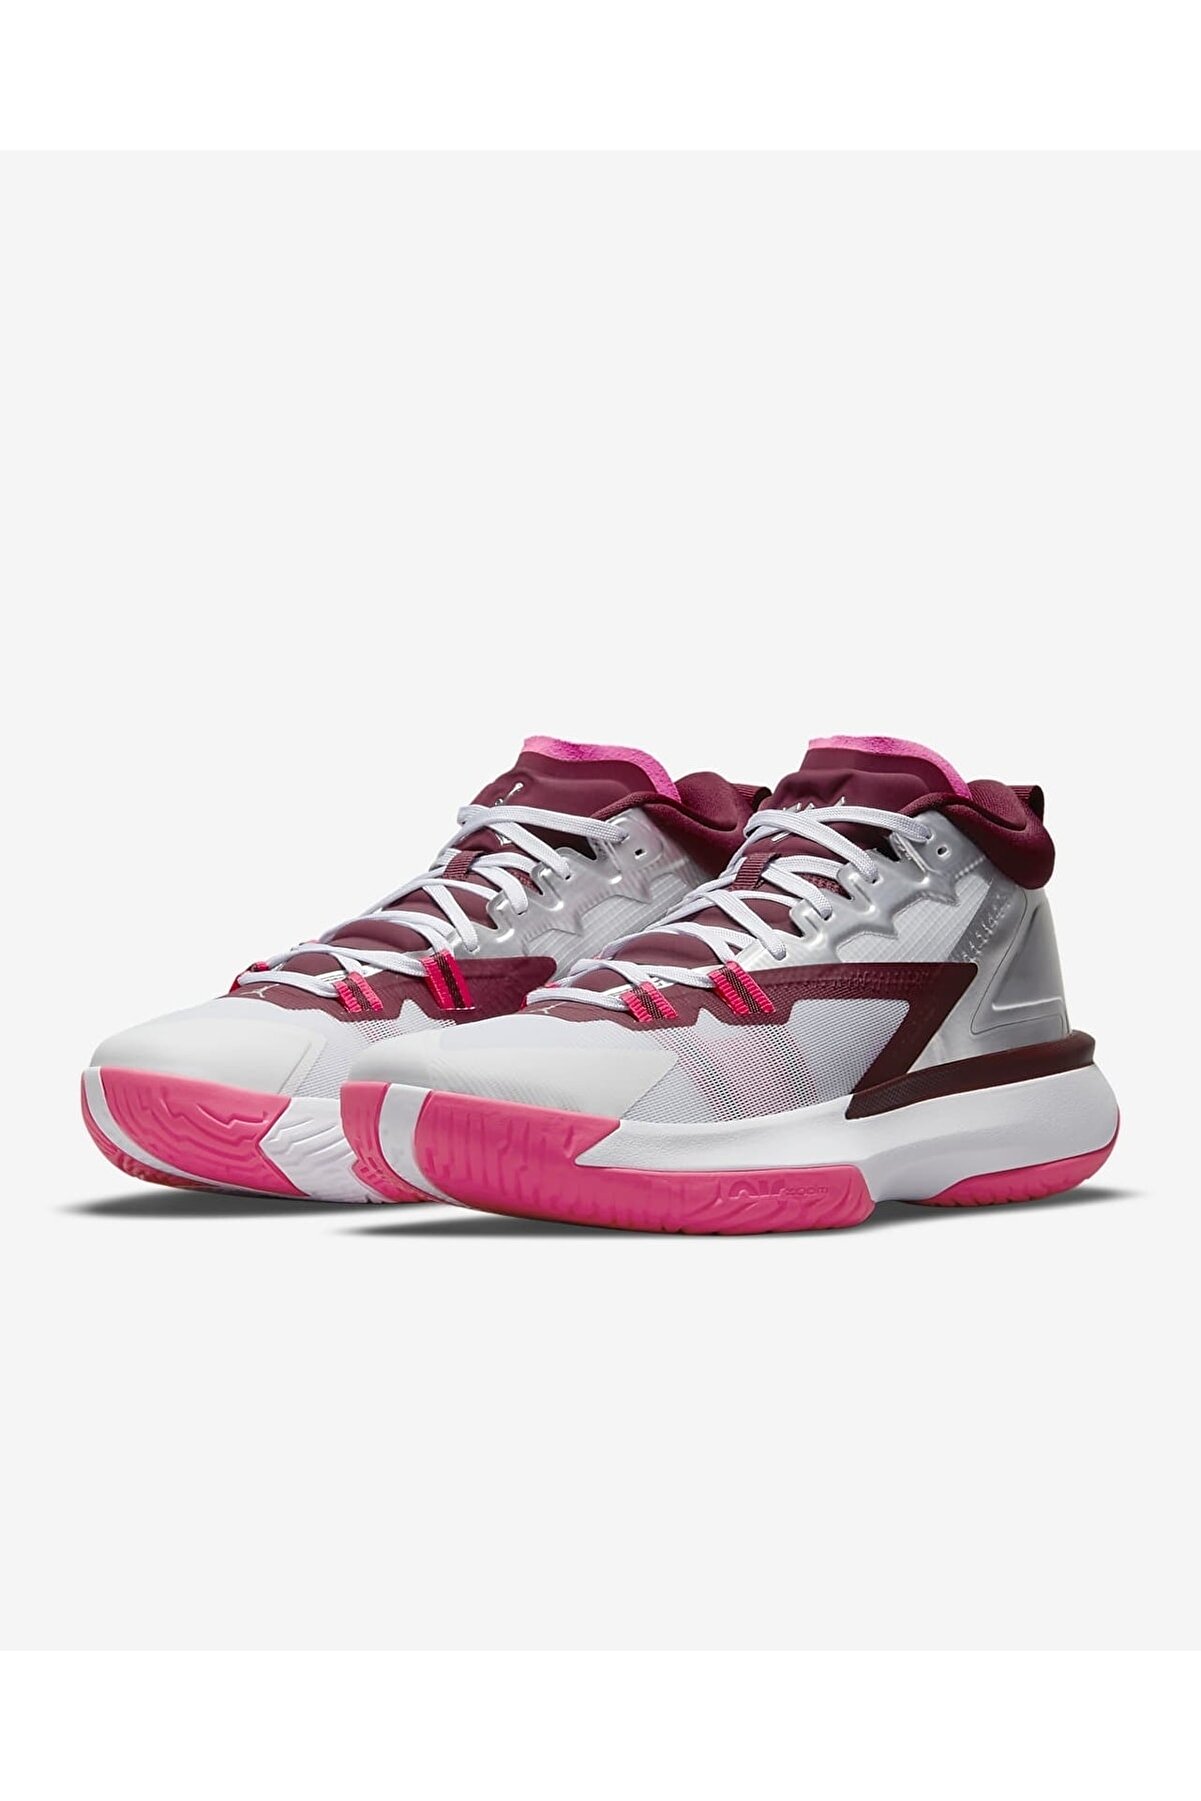 Nike Jordan Zion 1 Fiyatı, Yorumları - Trendyol